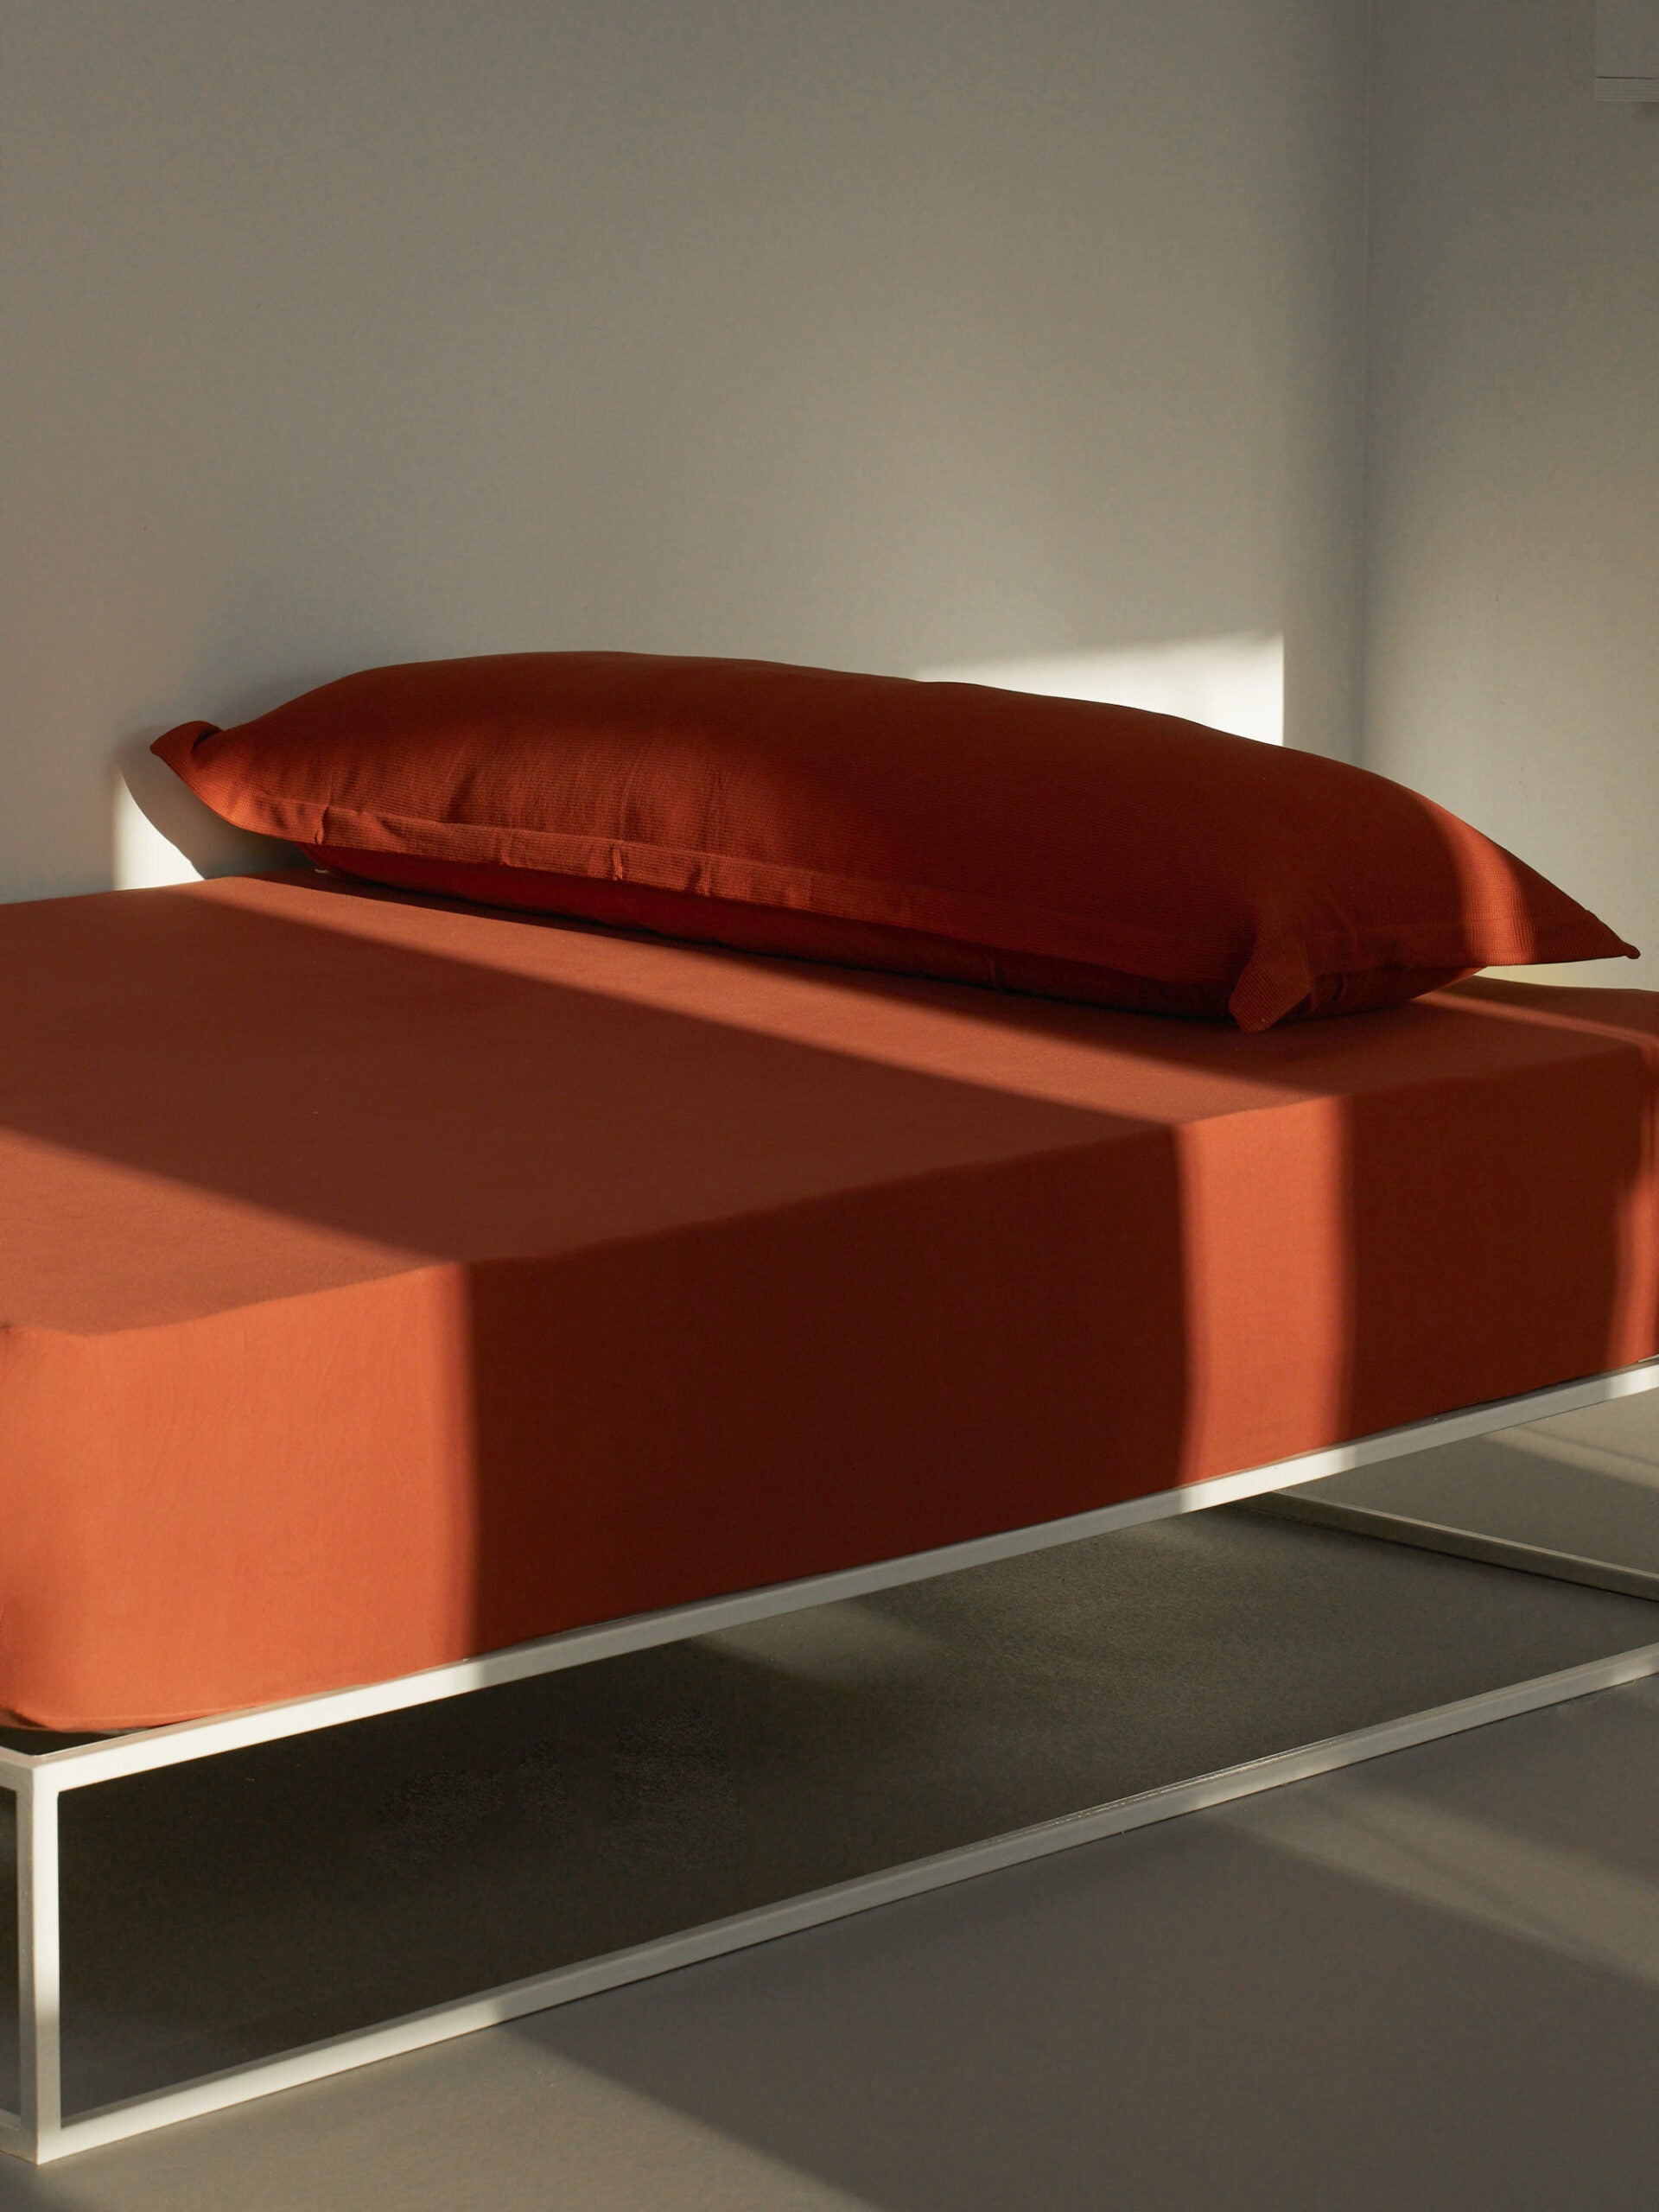 מיטת ברזל לבנה עם סדין, כרית וציפית לכרית ארוכה בצבע טאבקו 